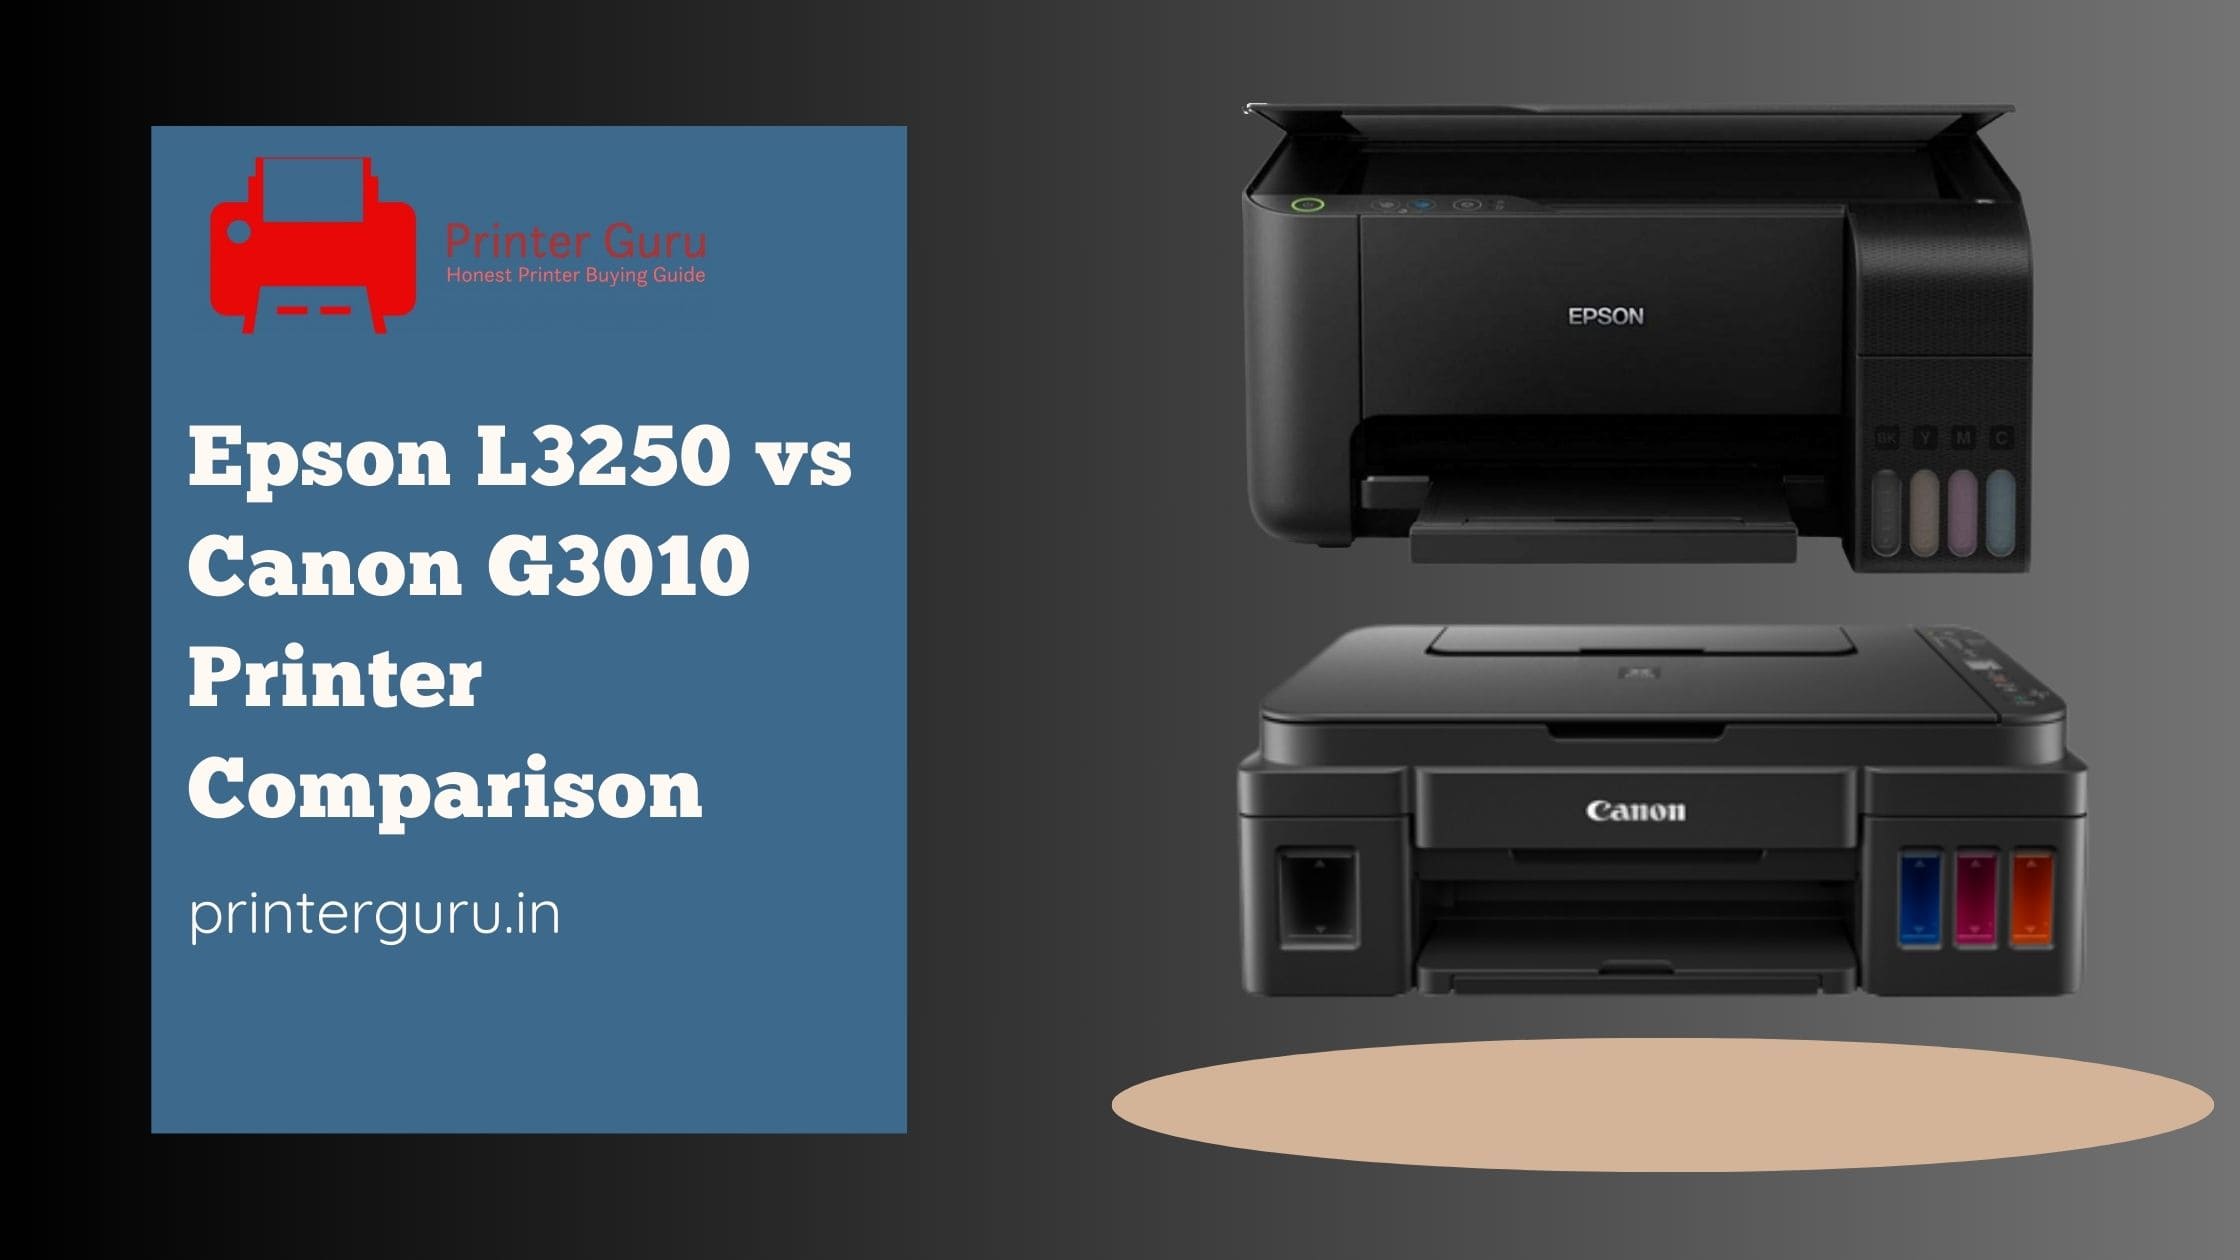 Epson L3250 vs Canon G3010